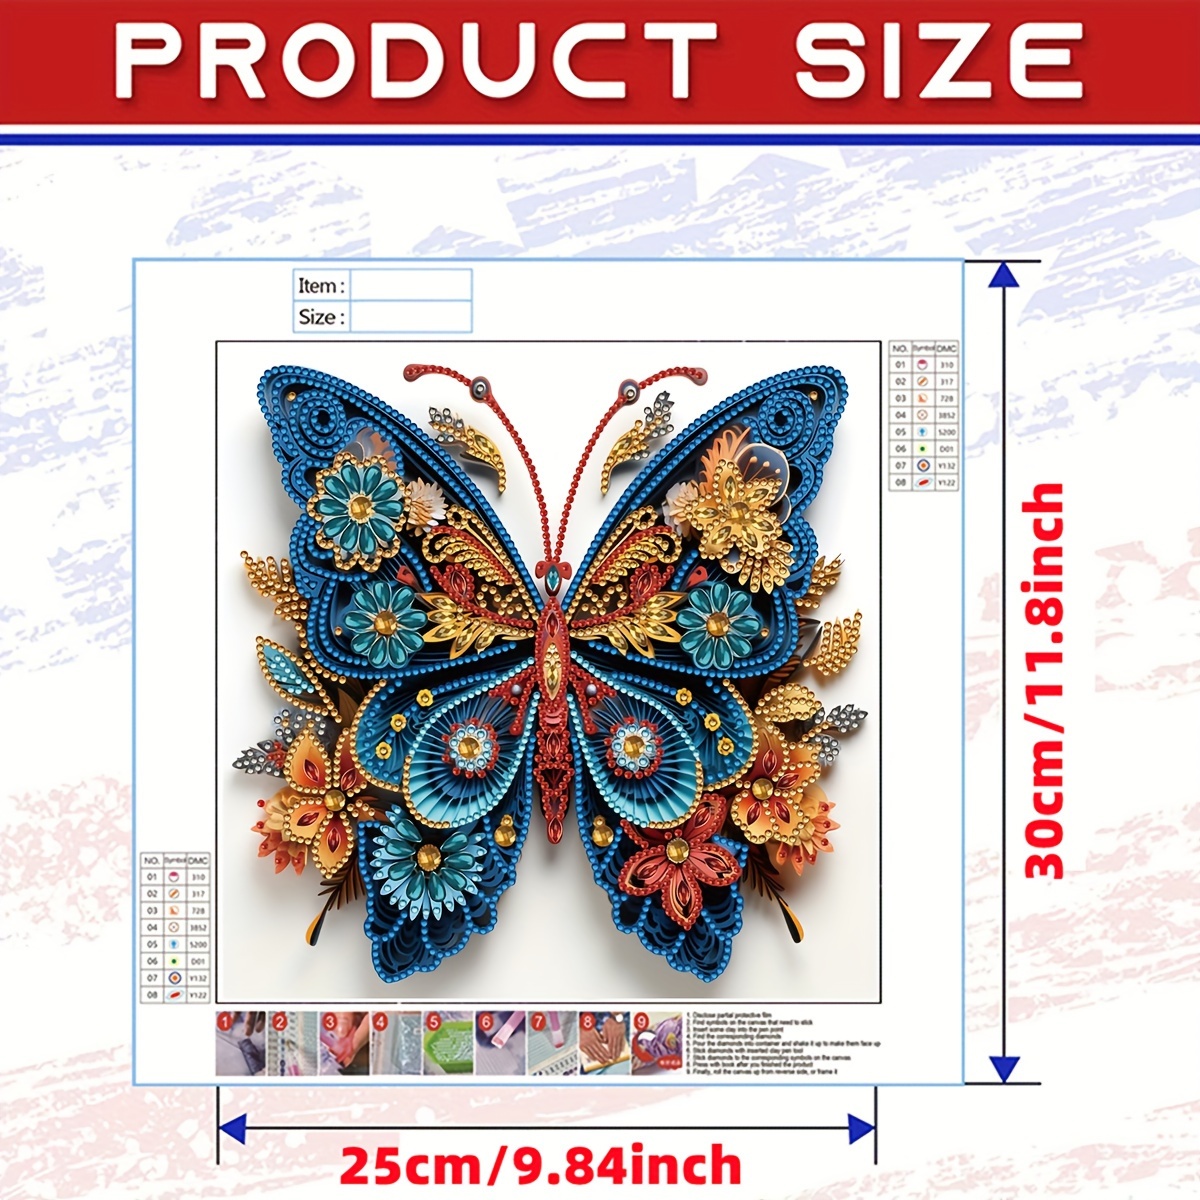 Butterfly Diamond Painting Kit with Bonus 5D Diamond Painting Kit